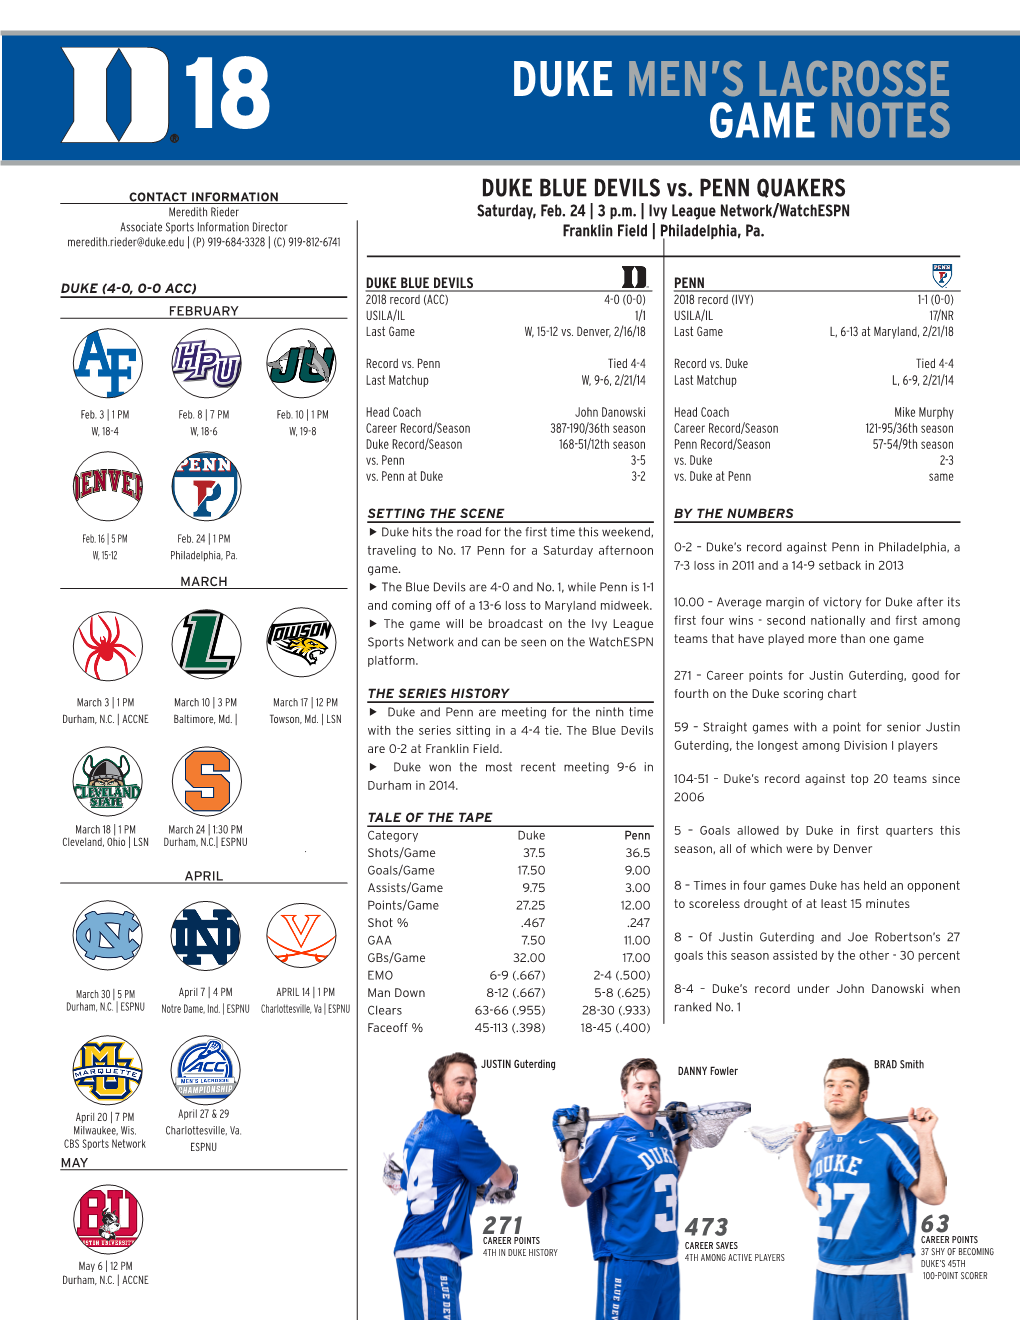 Duke Men's Lacrosse Game Notes